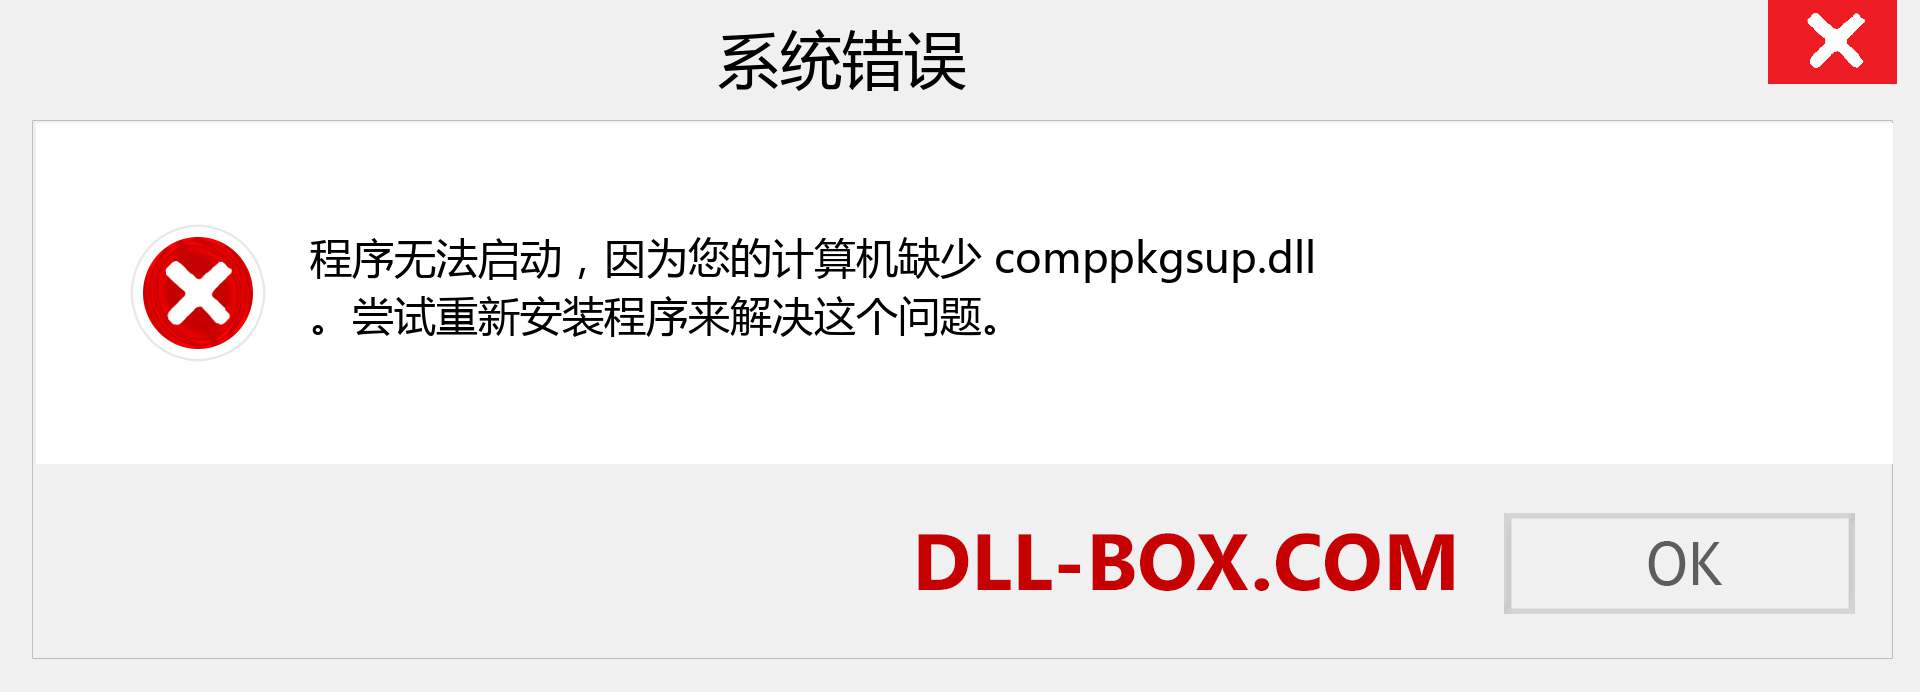 comppkgsup.dll 文件丢失？。 适用于 Windows 7、8、10 的下载 - 修复 Windows、照片、图像上的 comppkgsup dll 丢失错误